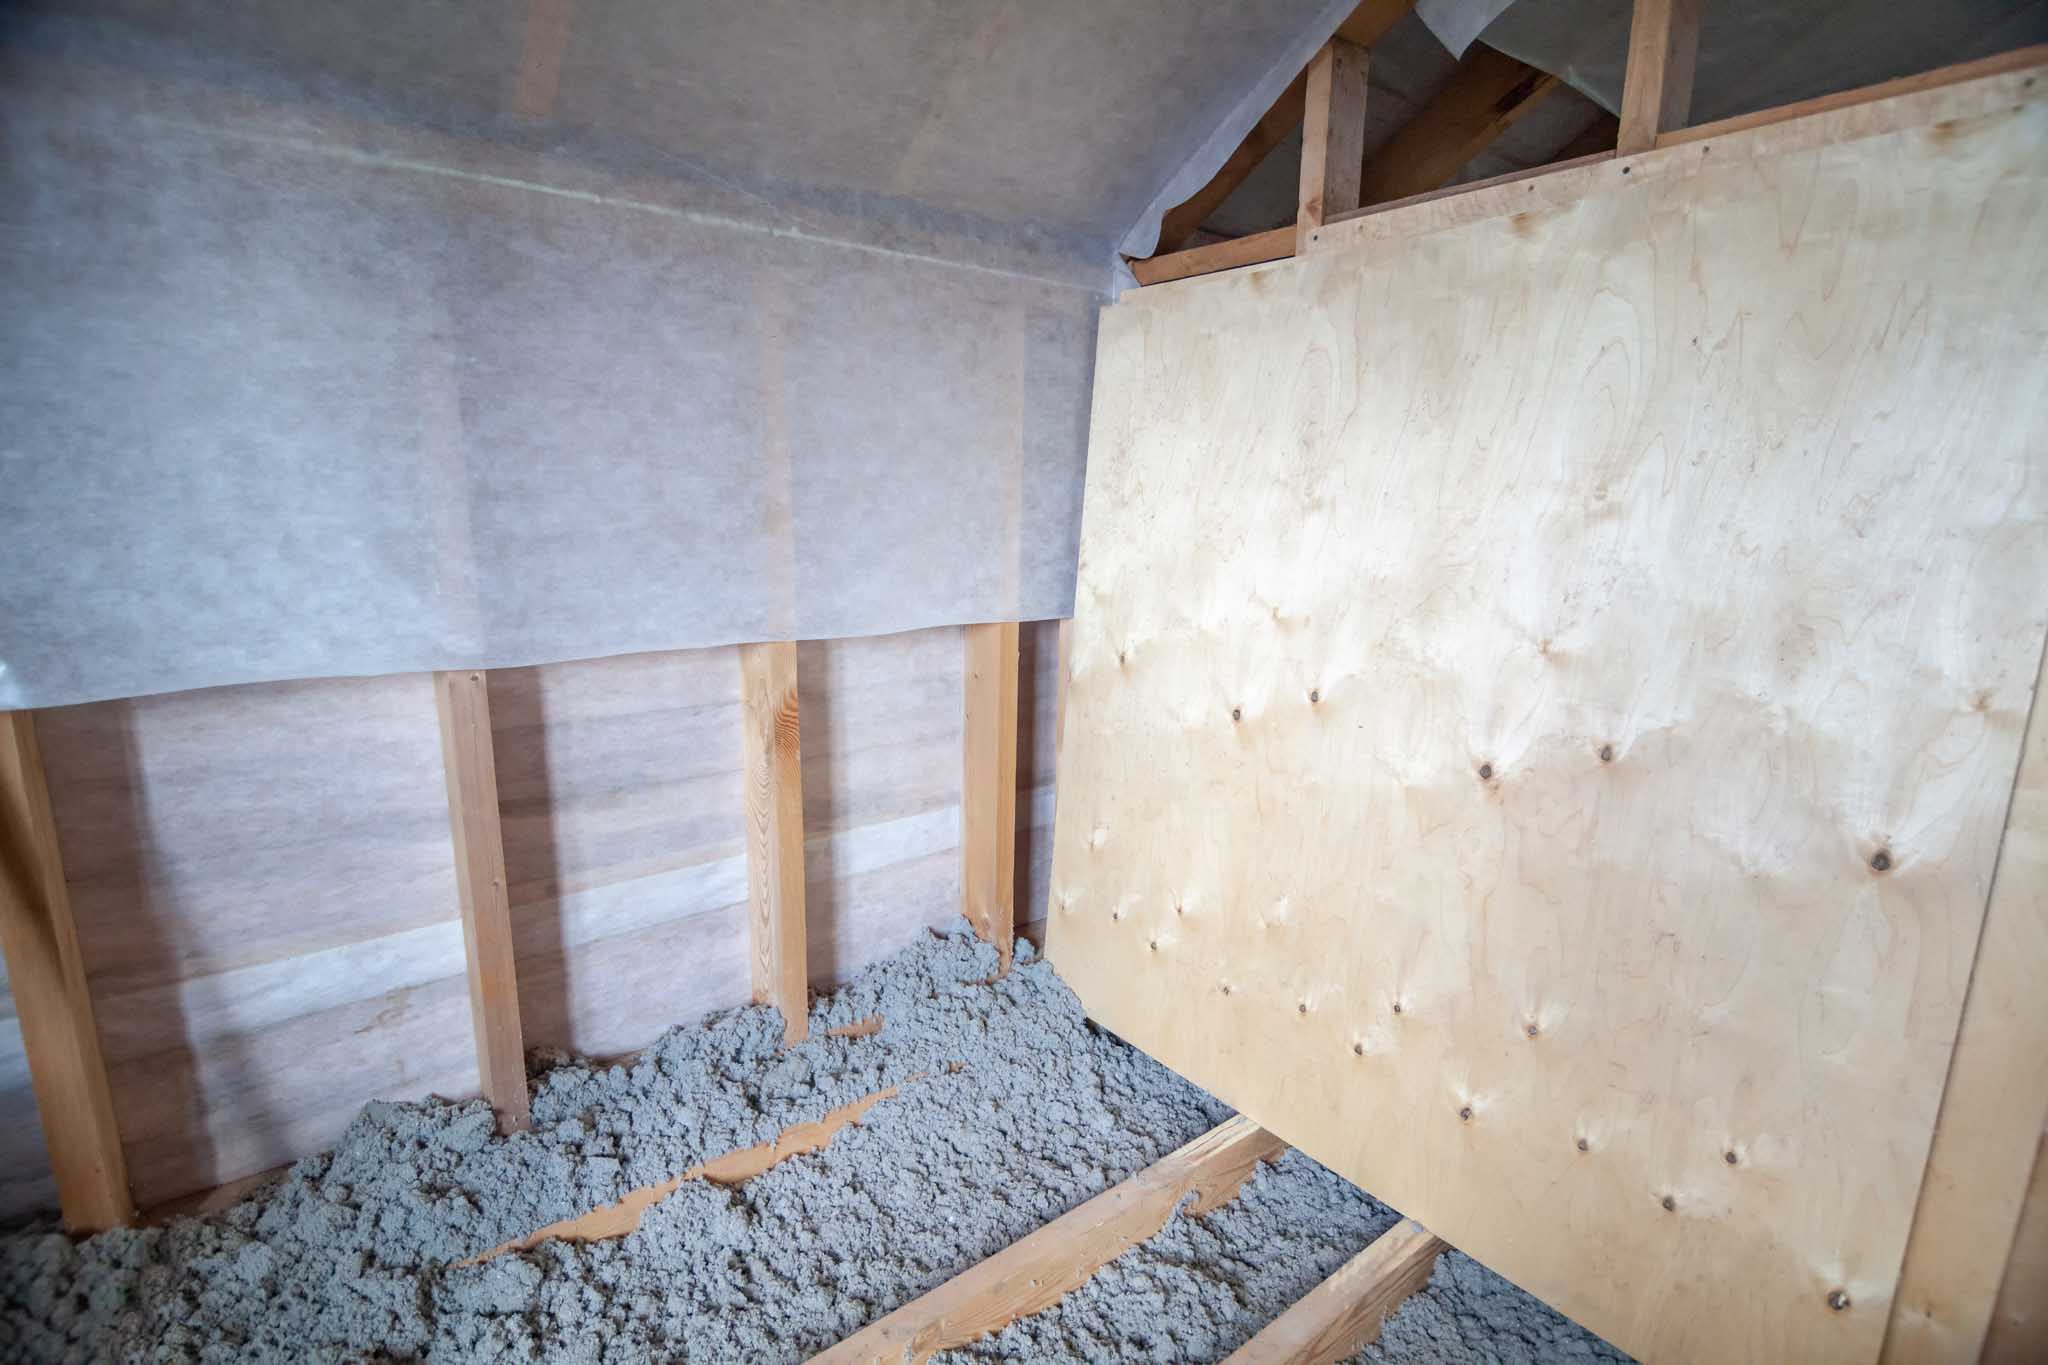 An attic with a recent vapor barrier installation.